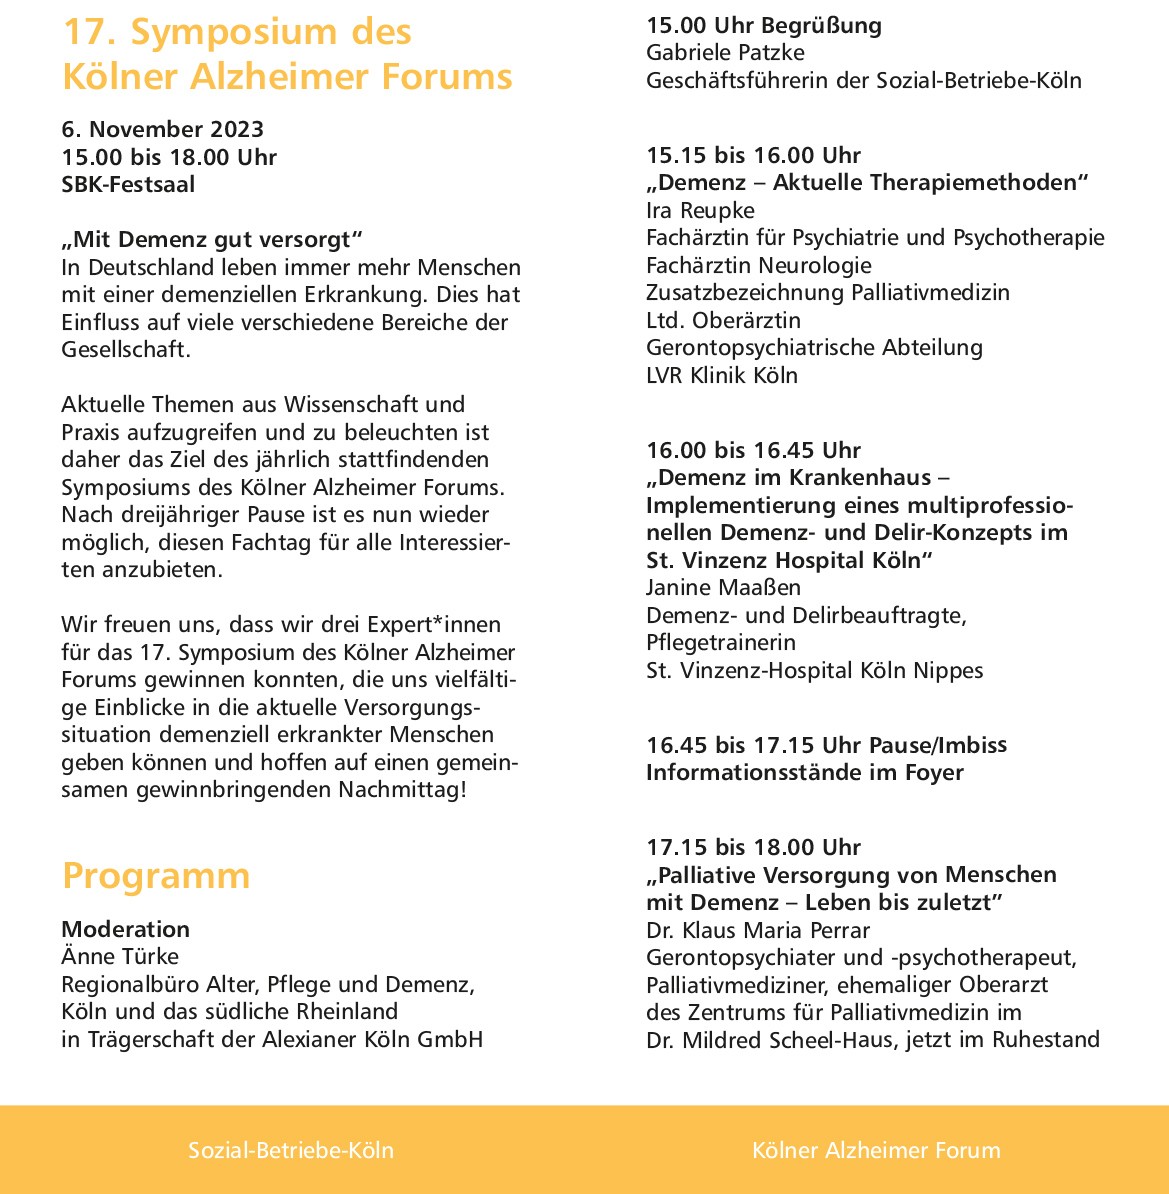 17. Symposium des Alzheimer Forums 7